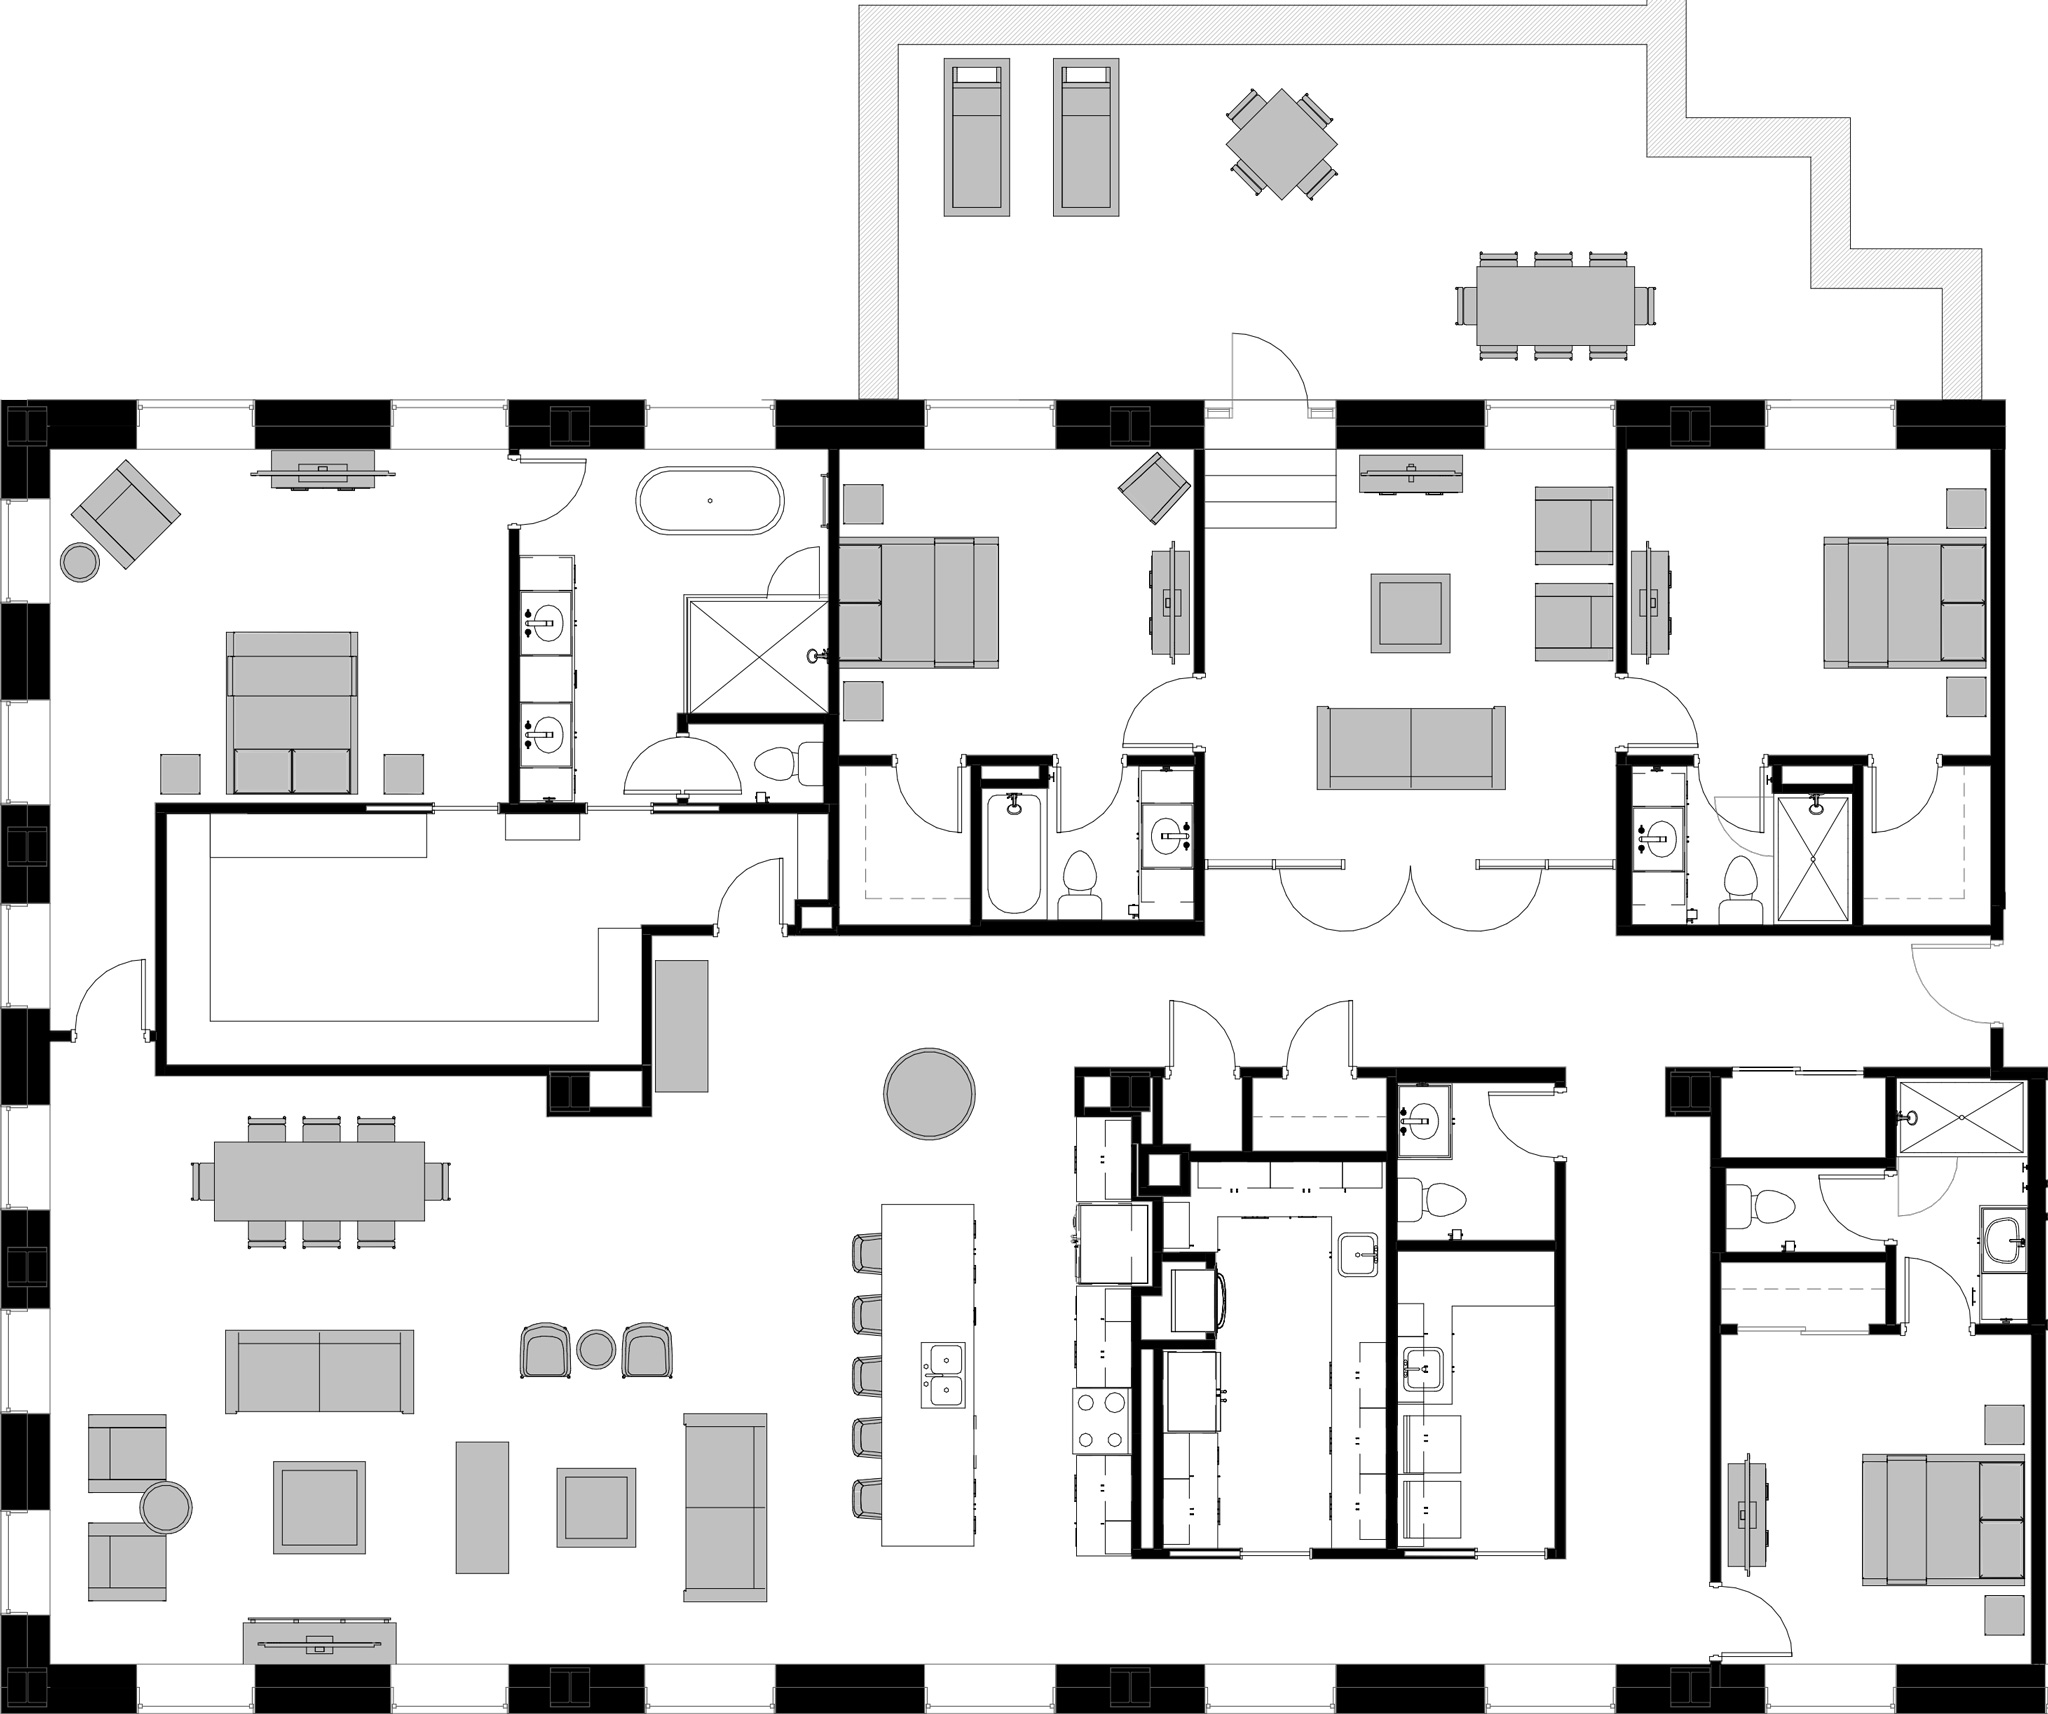 ARCO 4 Bedroom Floor Plan